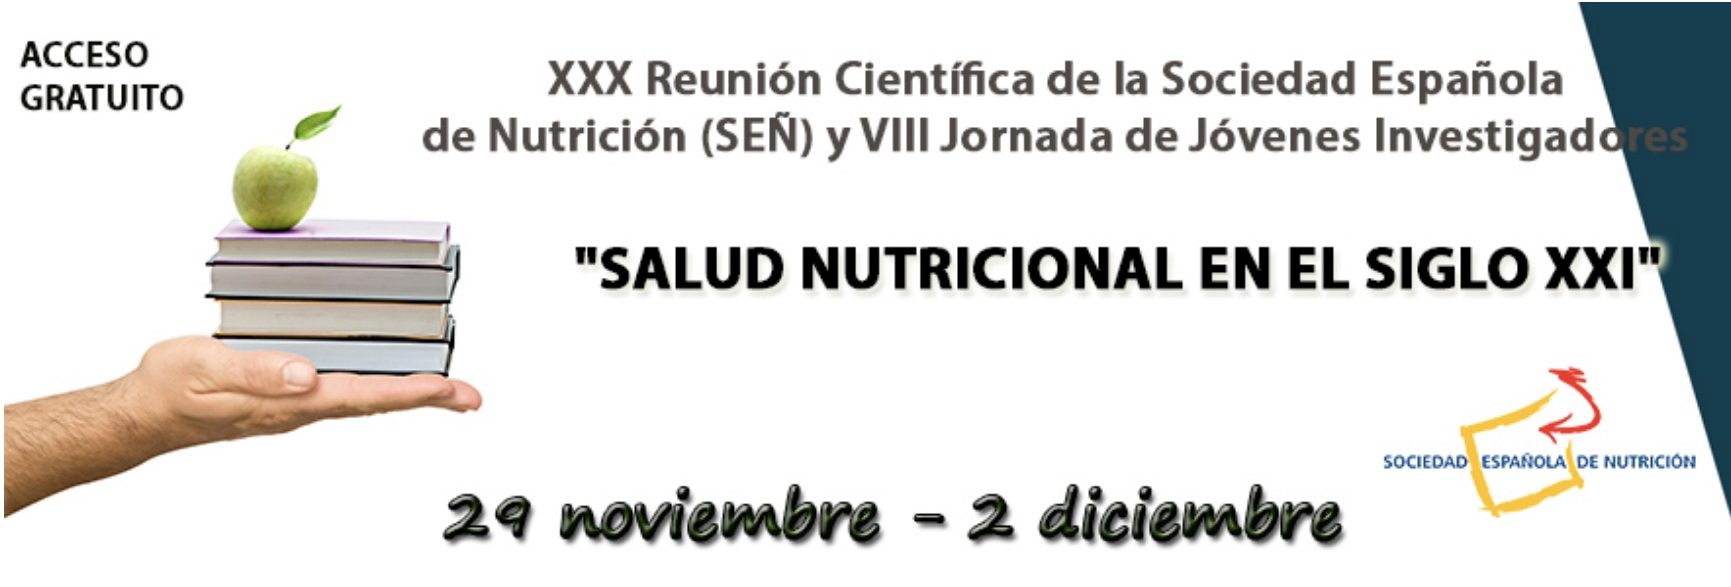 XXX Reunió Científica SEÑ i VIII Jornada de Joves investigadors “Salud Nutricional en el Siglo XXI”, 29 de novembre-2 de desembre